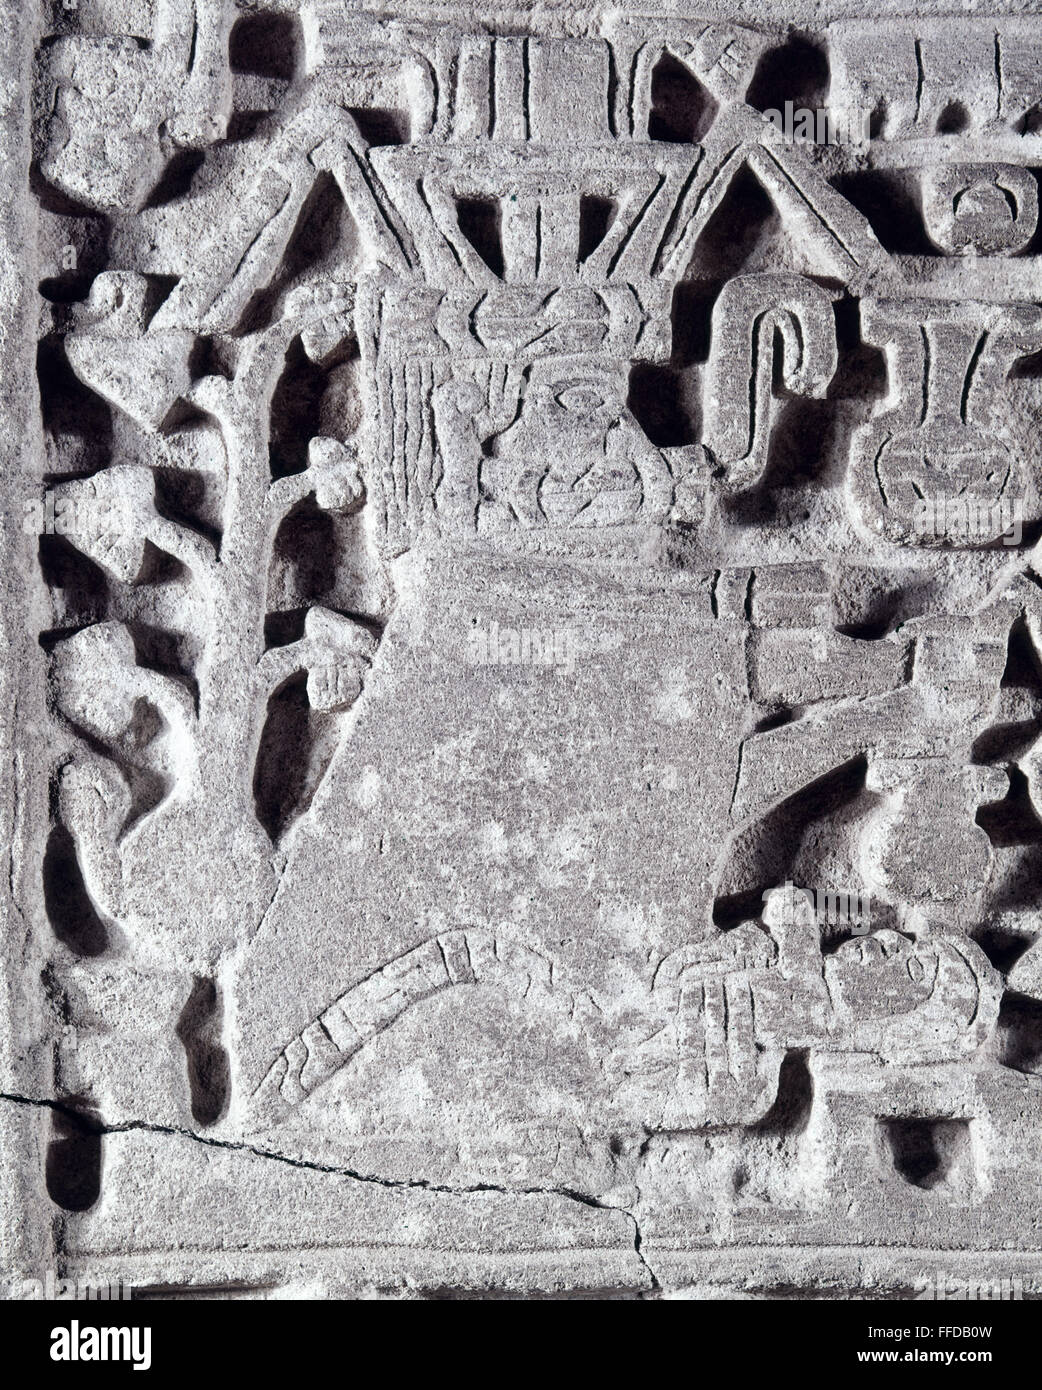 México: Estela mixteca. /Ndetalles de una estela de piedra tallada representando una mujer dando a luz. Desde el techo de una tumba mixteca en Zaachila, Oaxaca, México, c1000 A.D. Foto de stock